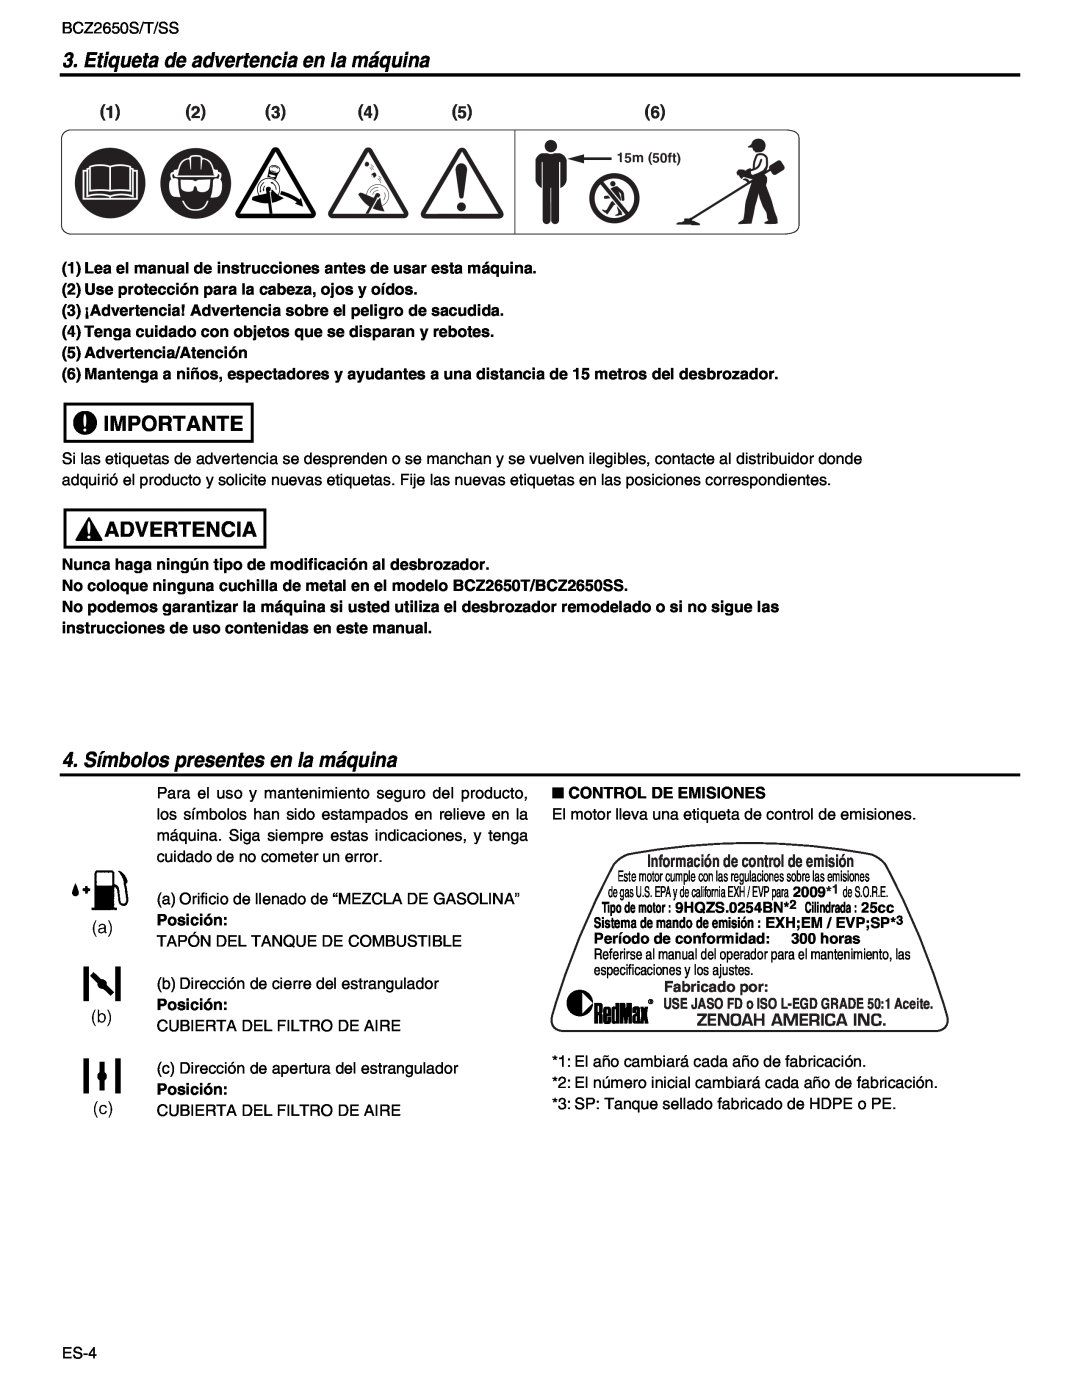 RedMax BCZ2650T manual Etiqueta de advertencia en la máquina, Importante, Advertencia, 4. Símbolos presentes en la máquina 